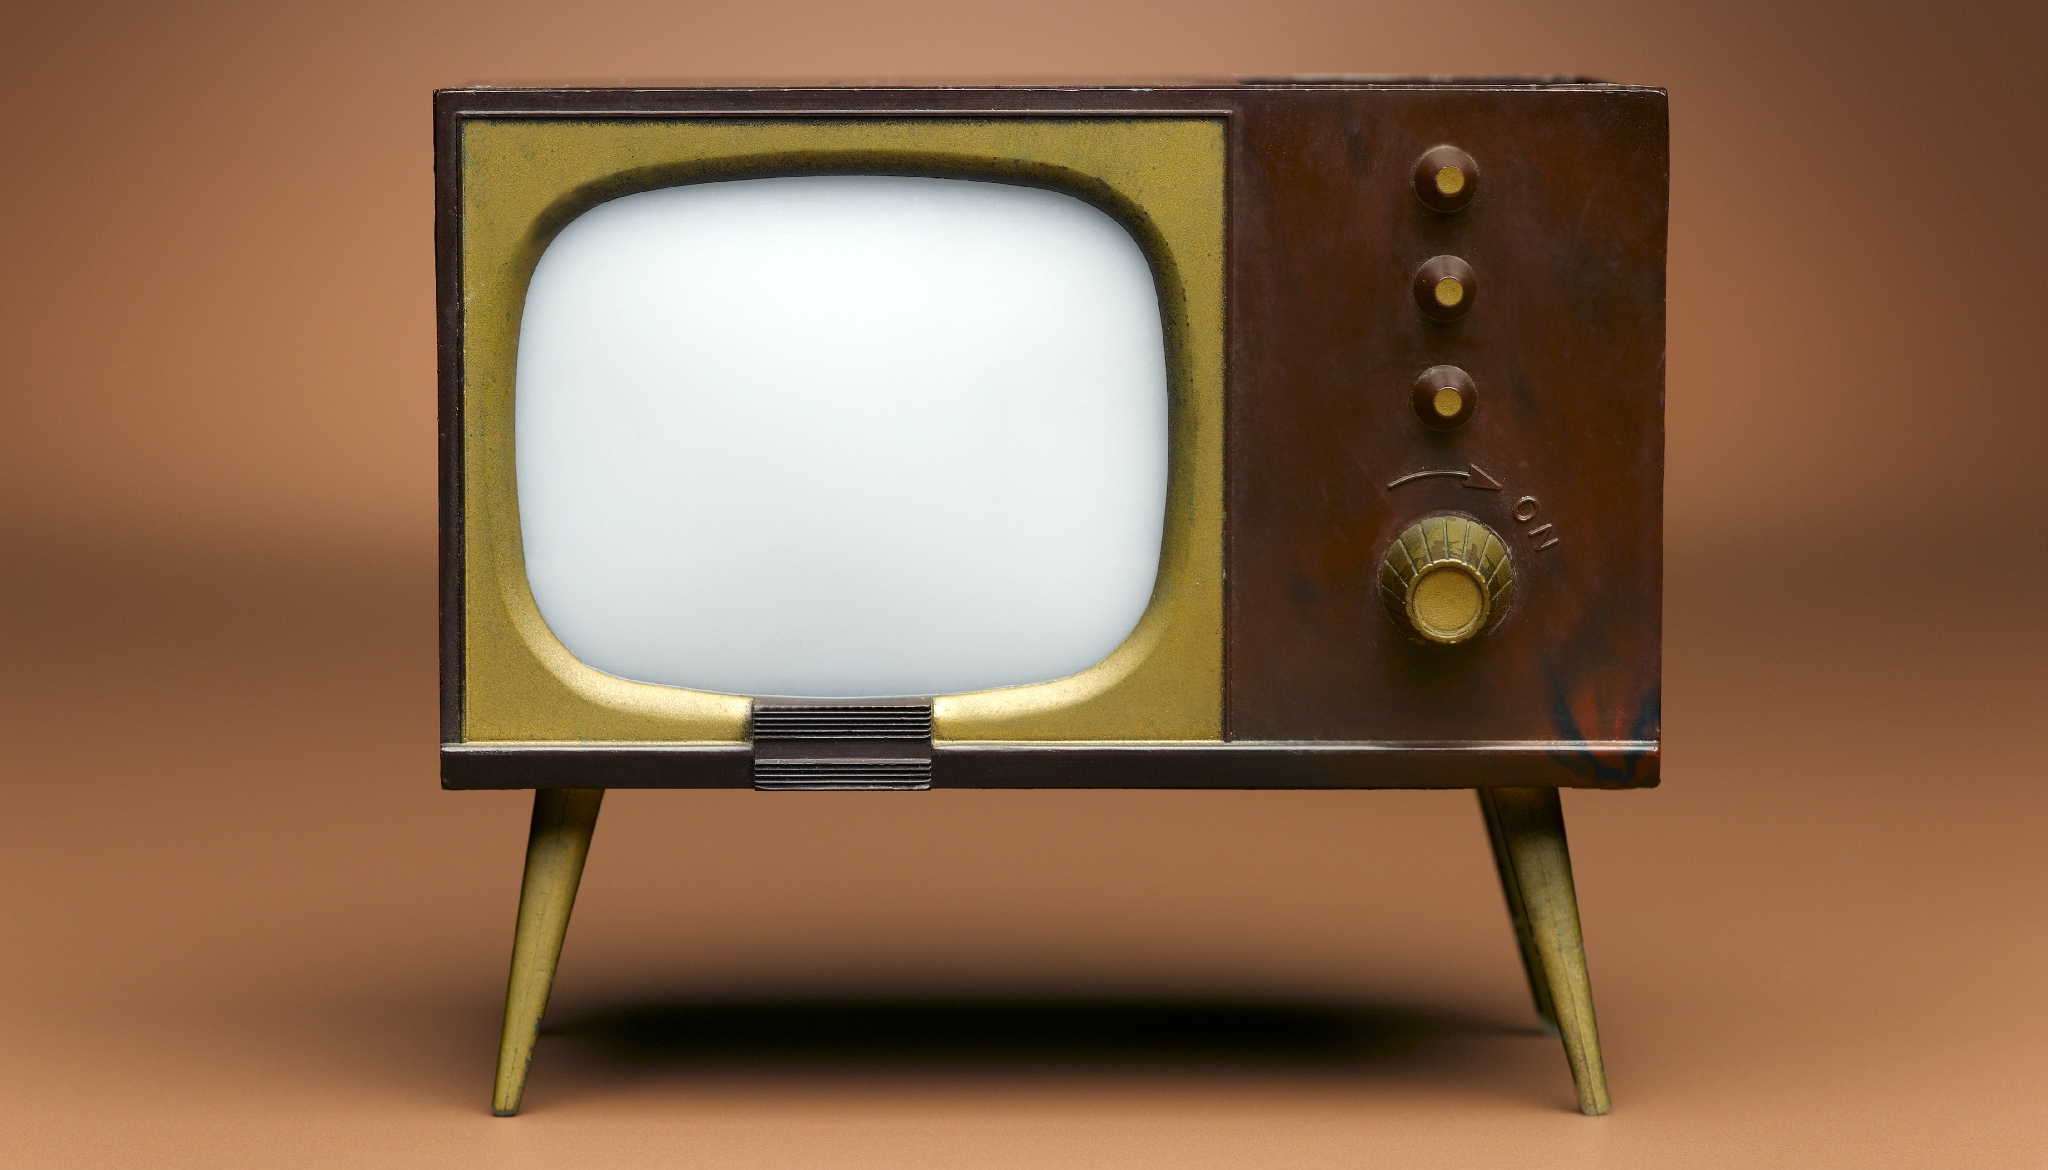 Телевизоры 1.16 5. Старинный телевизор. Необычные телевизоры. Телевизор в прошлом. Древний телевизор.